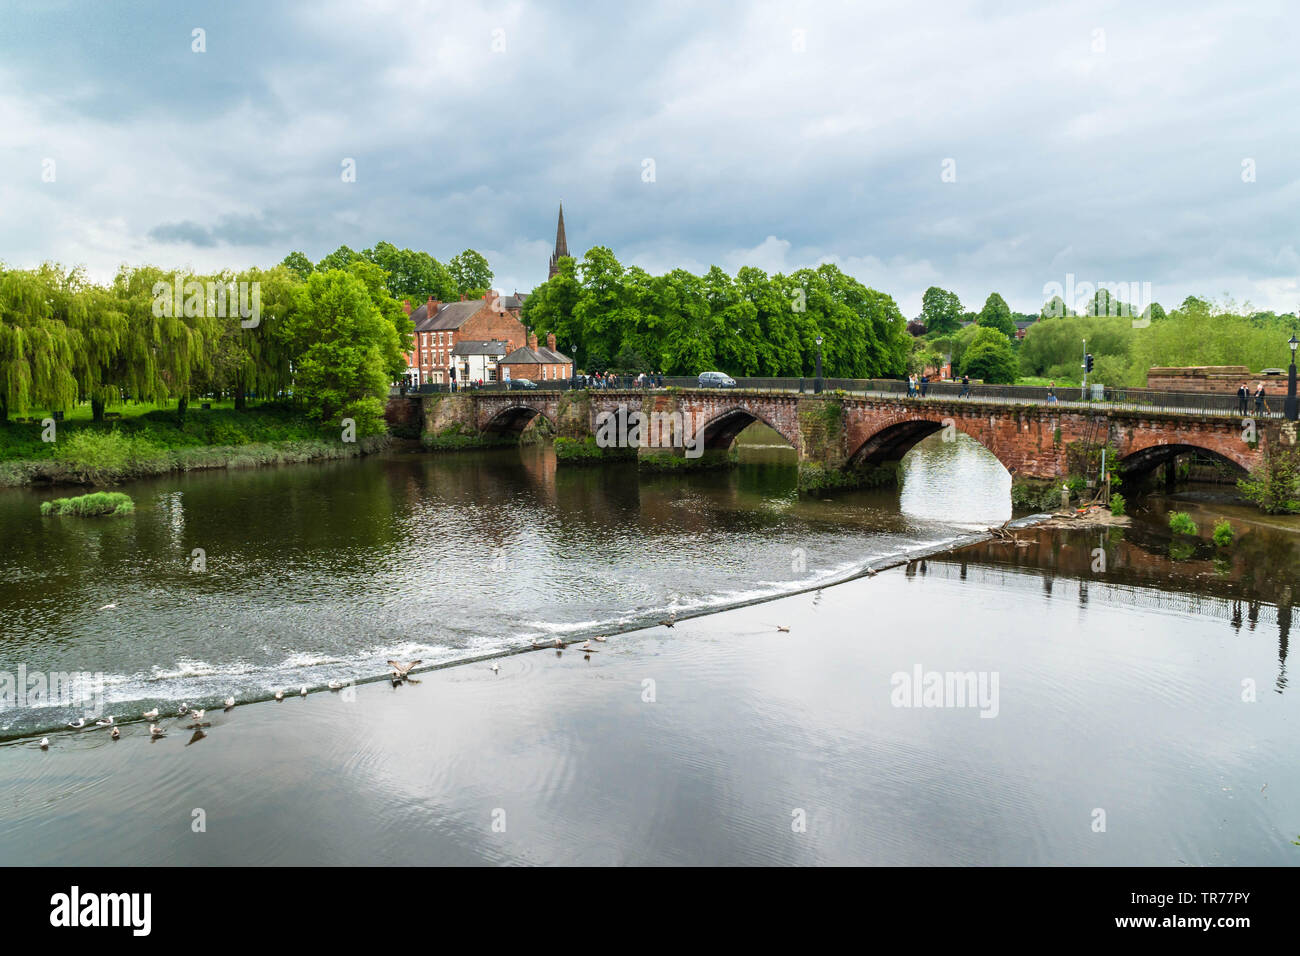 Ursprünglich von den Römern die Alte Brücke überspannt den Fluss Dee Dee Chester England Großbritannien gebaut. Mai 2019 Stockfoto